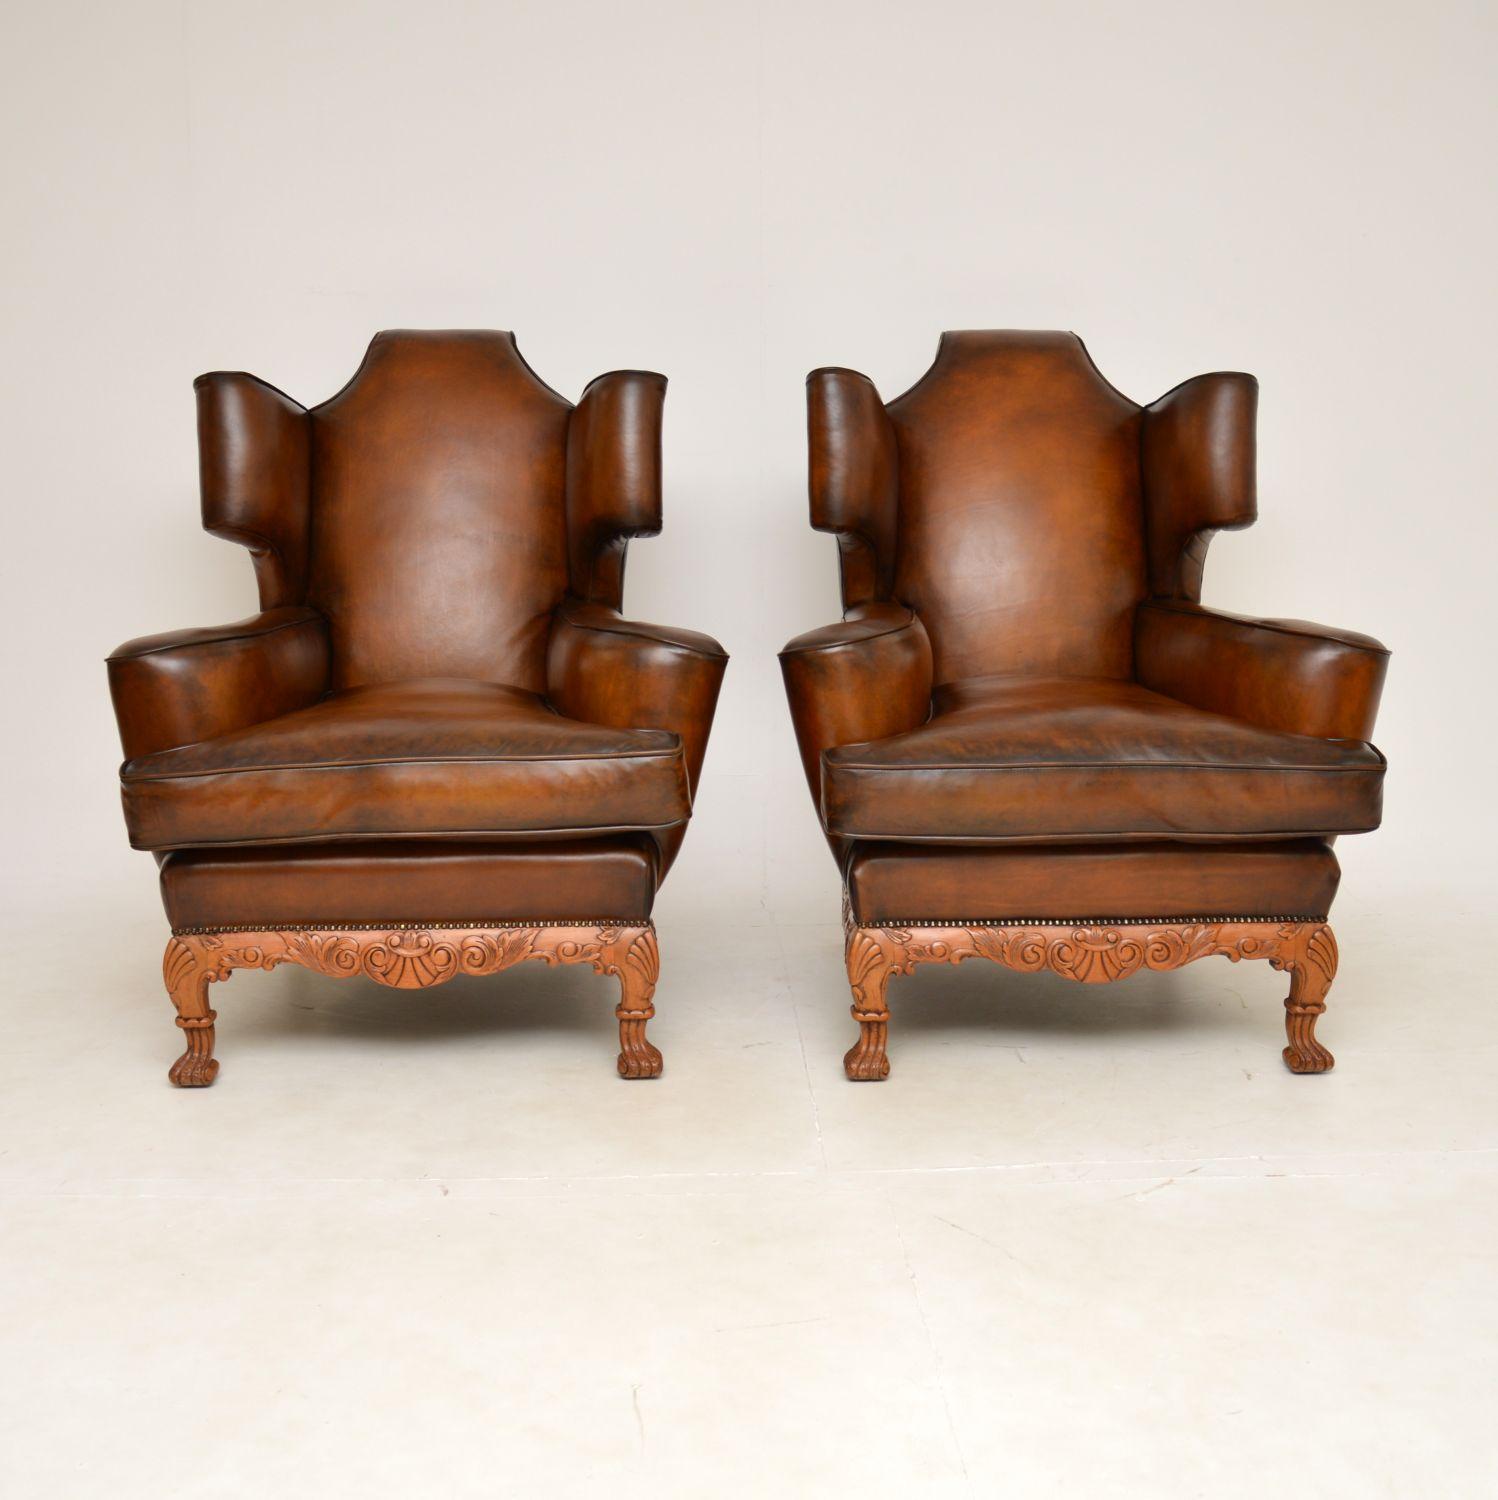 Une magnifique paire de fauteuils anciens en cuir avec dossier à oreilles, probablement la plus belle paire que nous ayons rencontrée. Ils ont été fabriqués en Angleterre et datent des années 1920 environ.

Ils sont de grandes proportions très